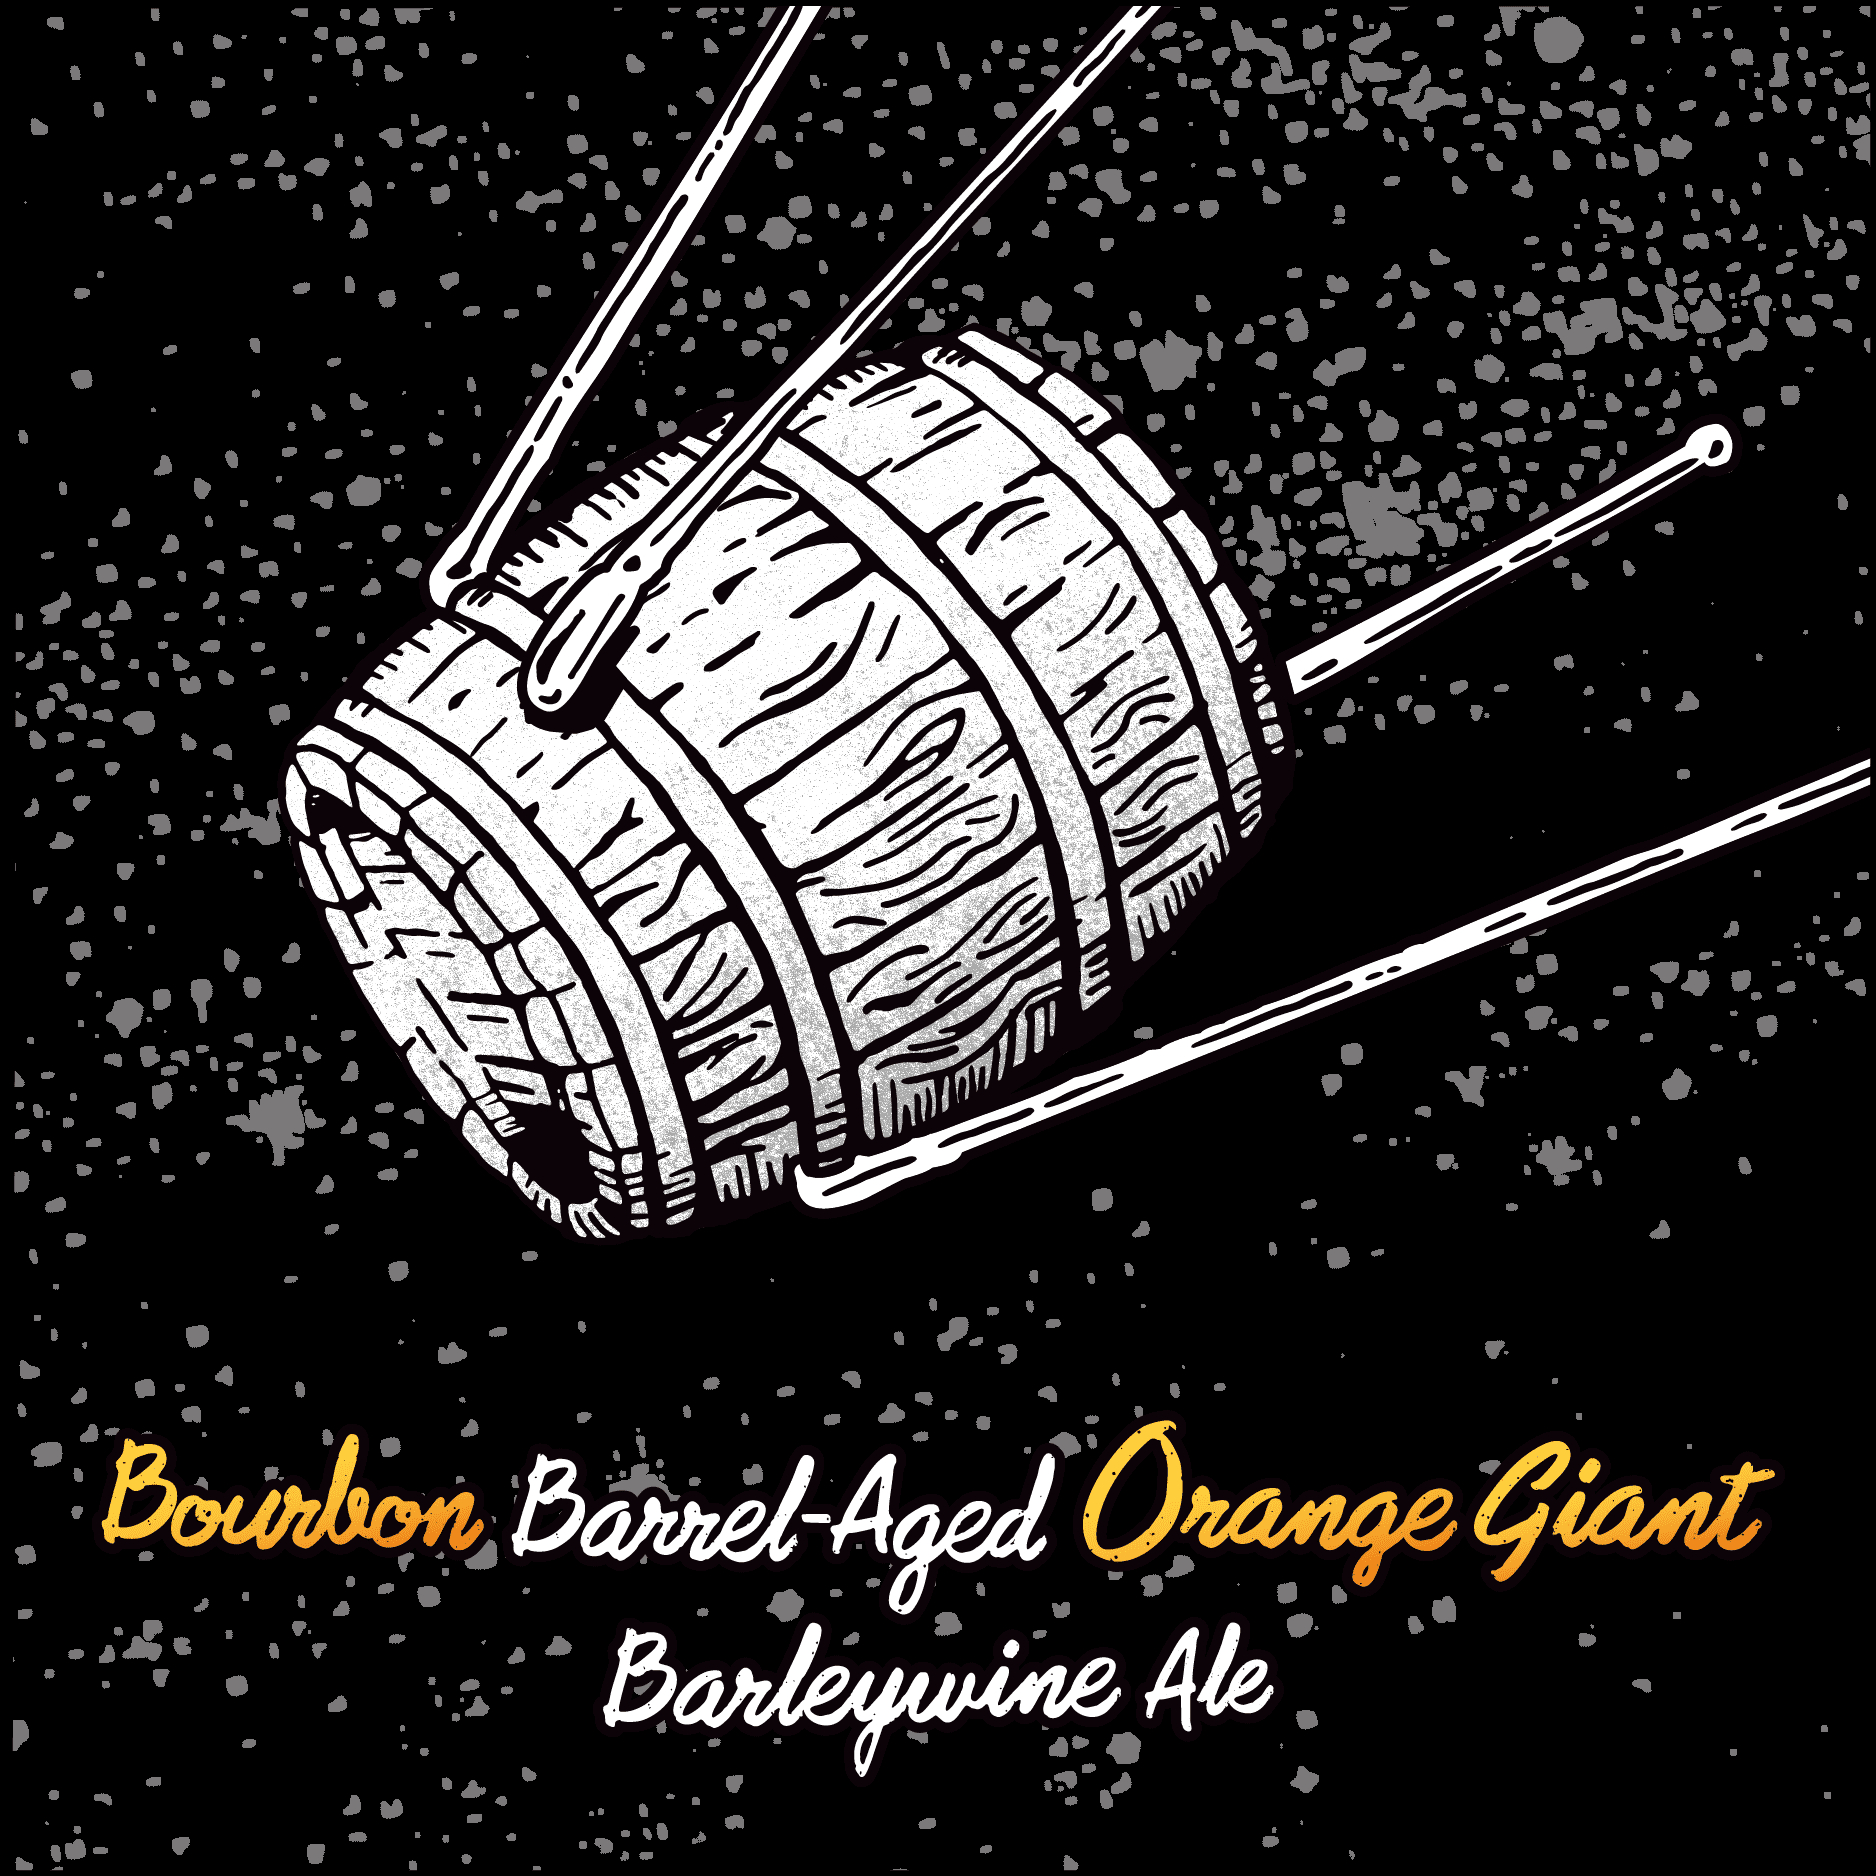 Bourbon Barrel-Aged Orange Giant Barleywine